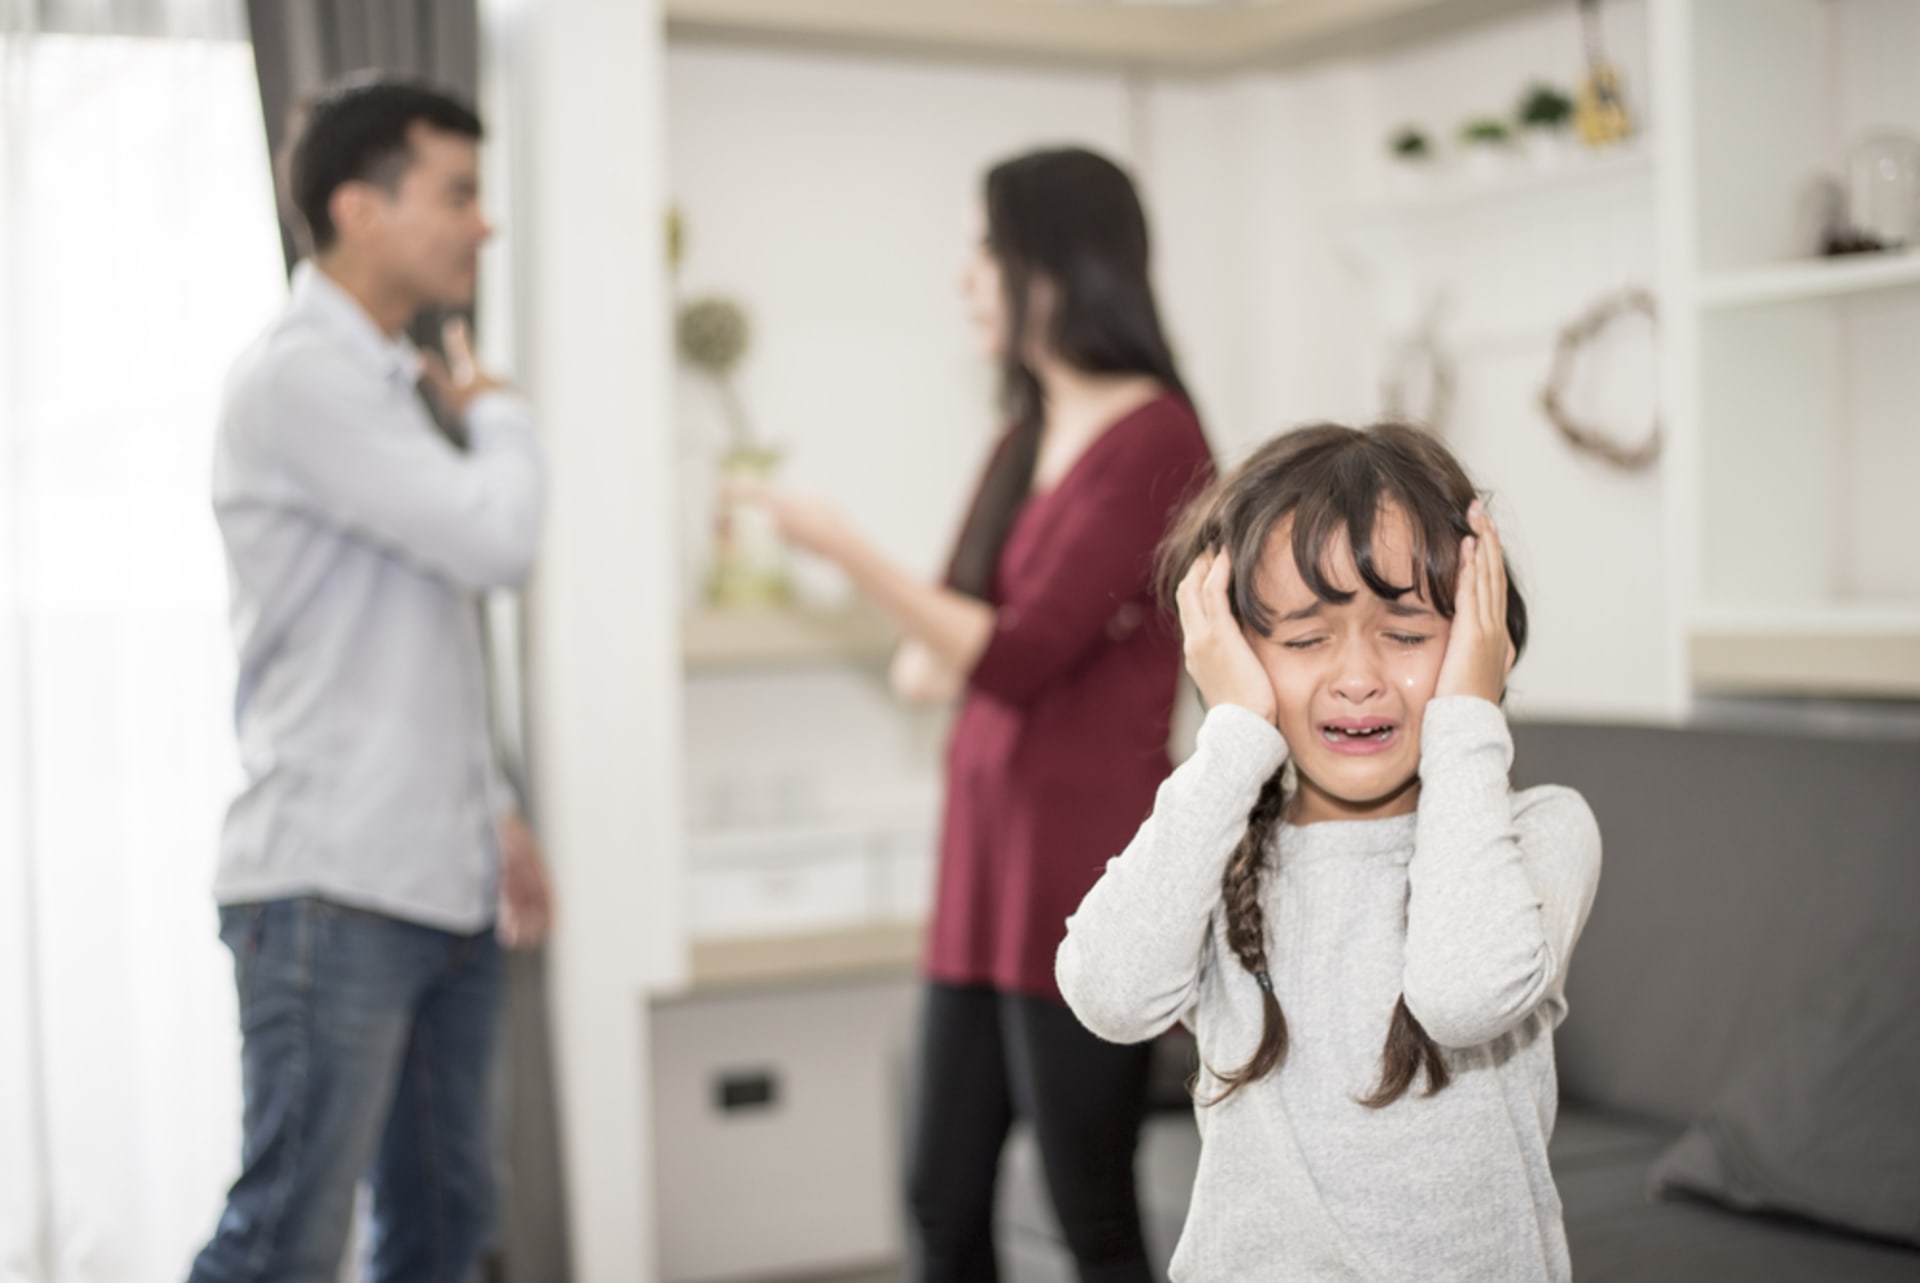 Co všechno může vaše dítě stresovat a vést k potenciální agresi vůči ostatním?